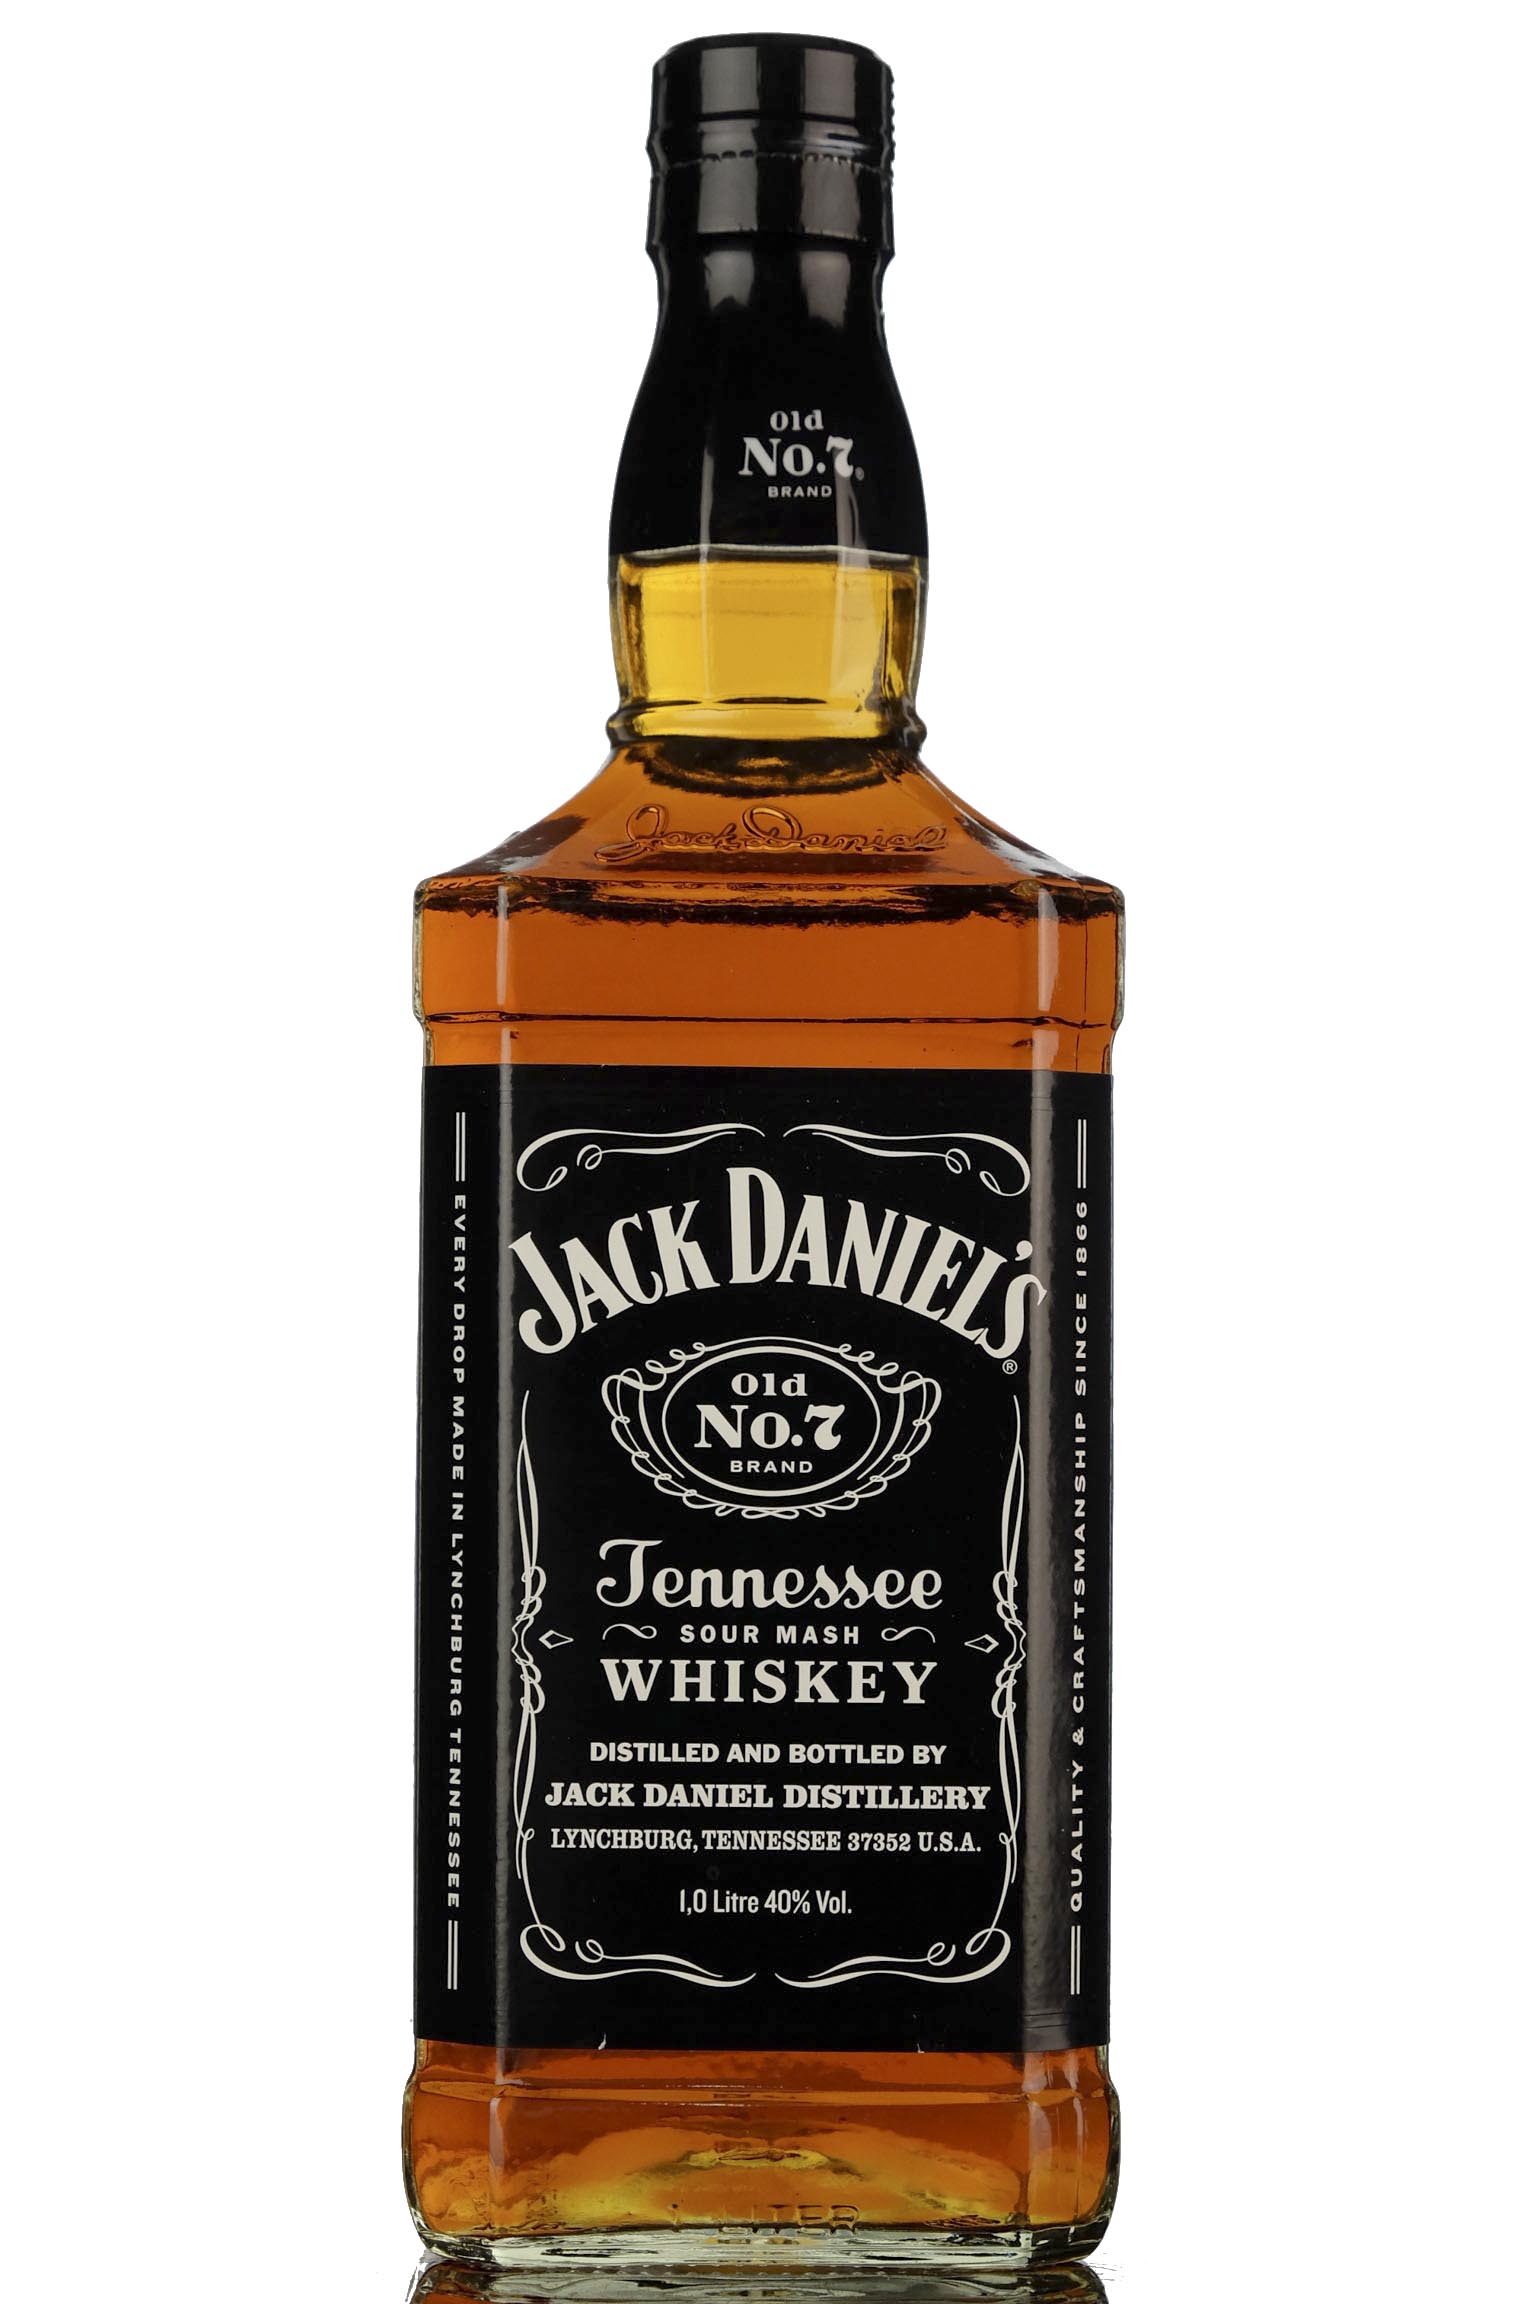 Jack Daniels Old No.7 Brand - 1 Litre